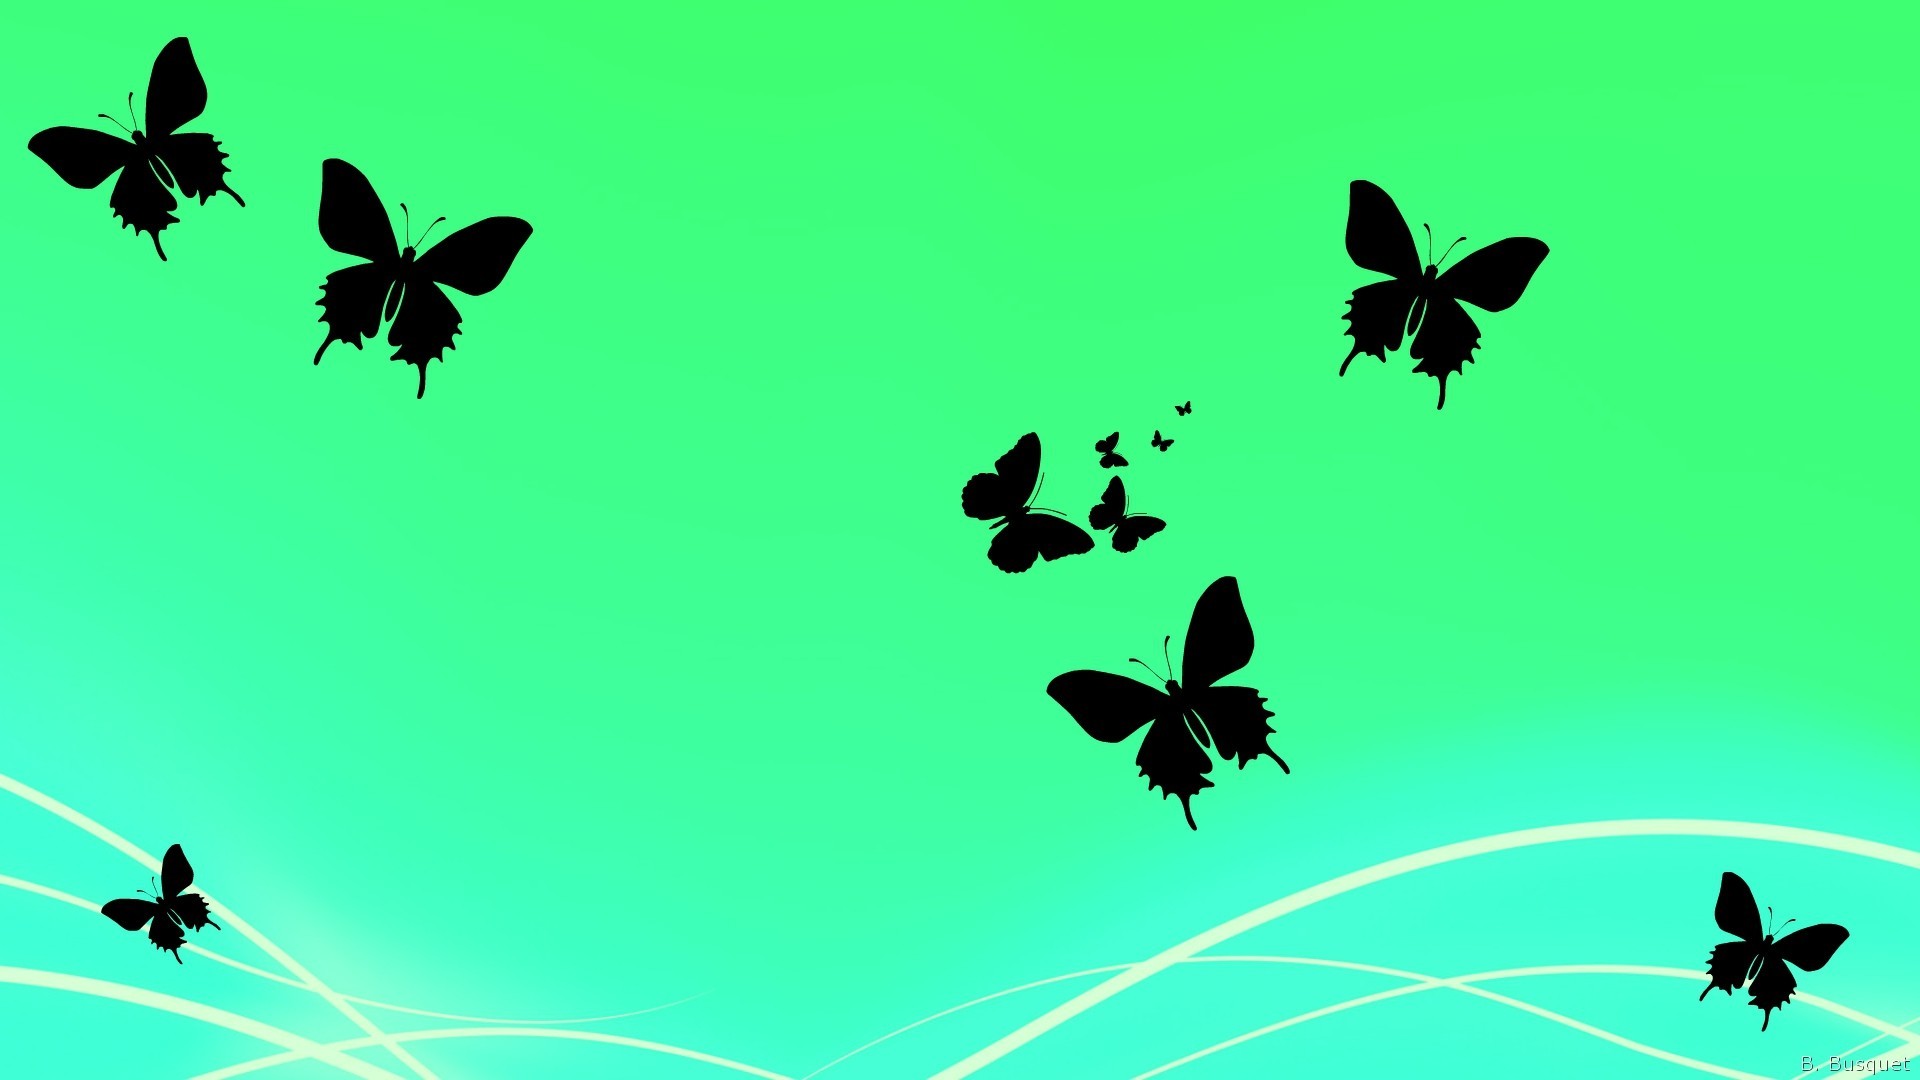 1920x1080 Green wallpaper with butterflies